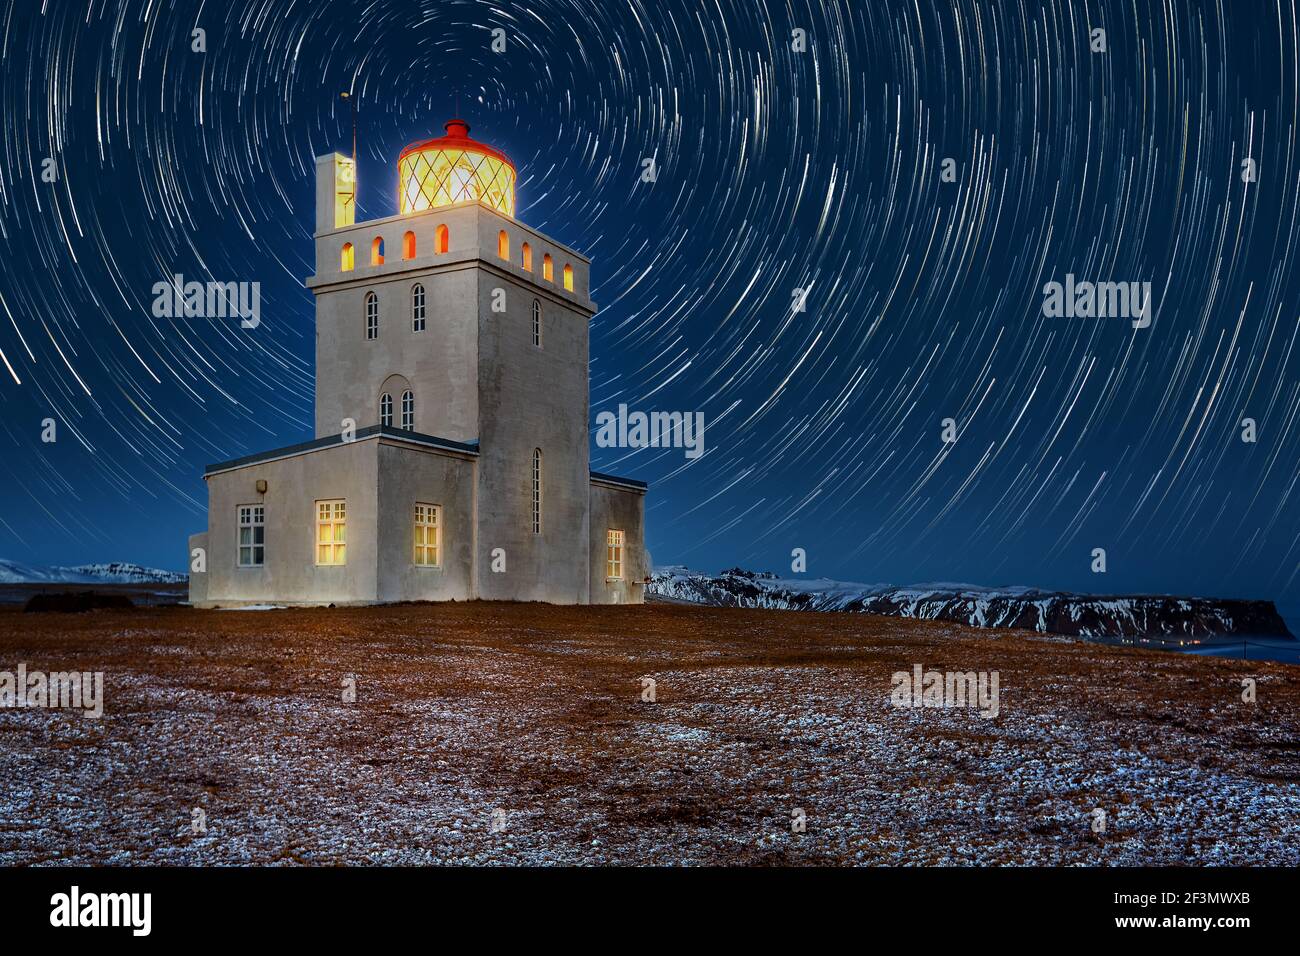 Phare de Dyrholaey sous les sentiers étoiles. La station de lumière de Dyrholaey a été établie en 1910, près du village de Vik, à l'extrémité sud de l'Islande. Banque D'Images